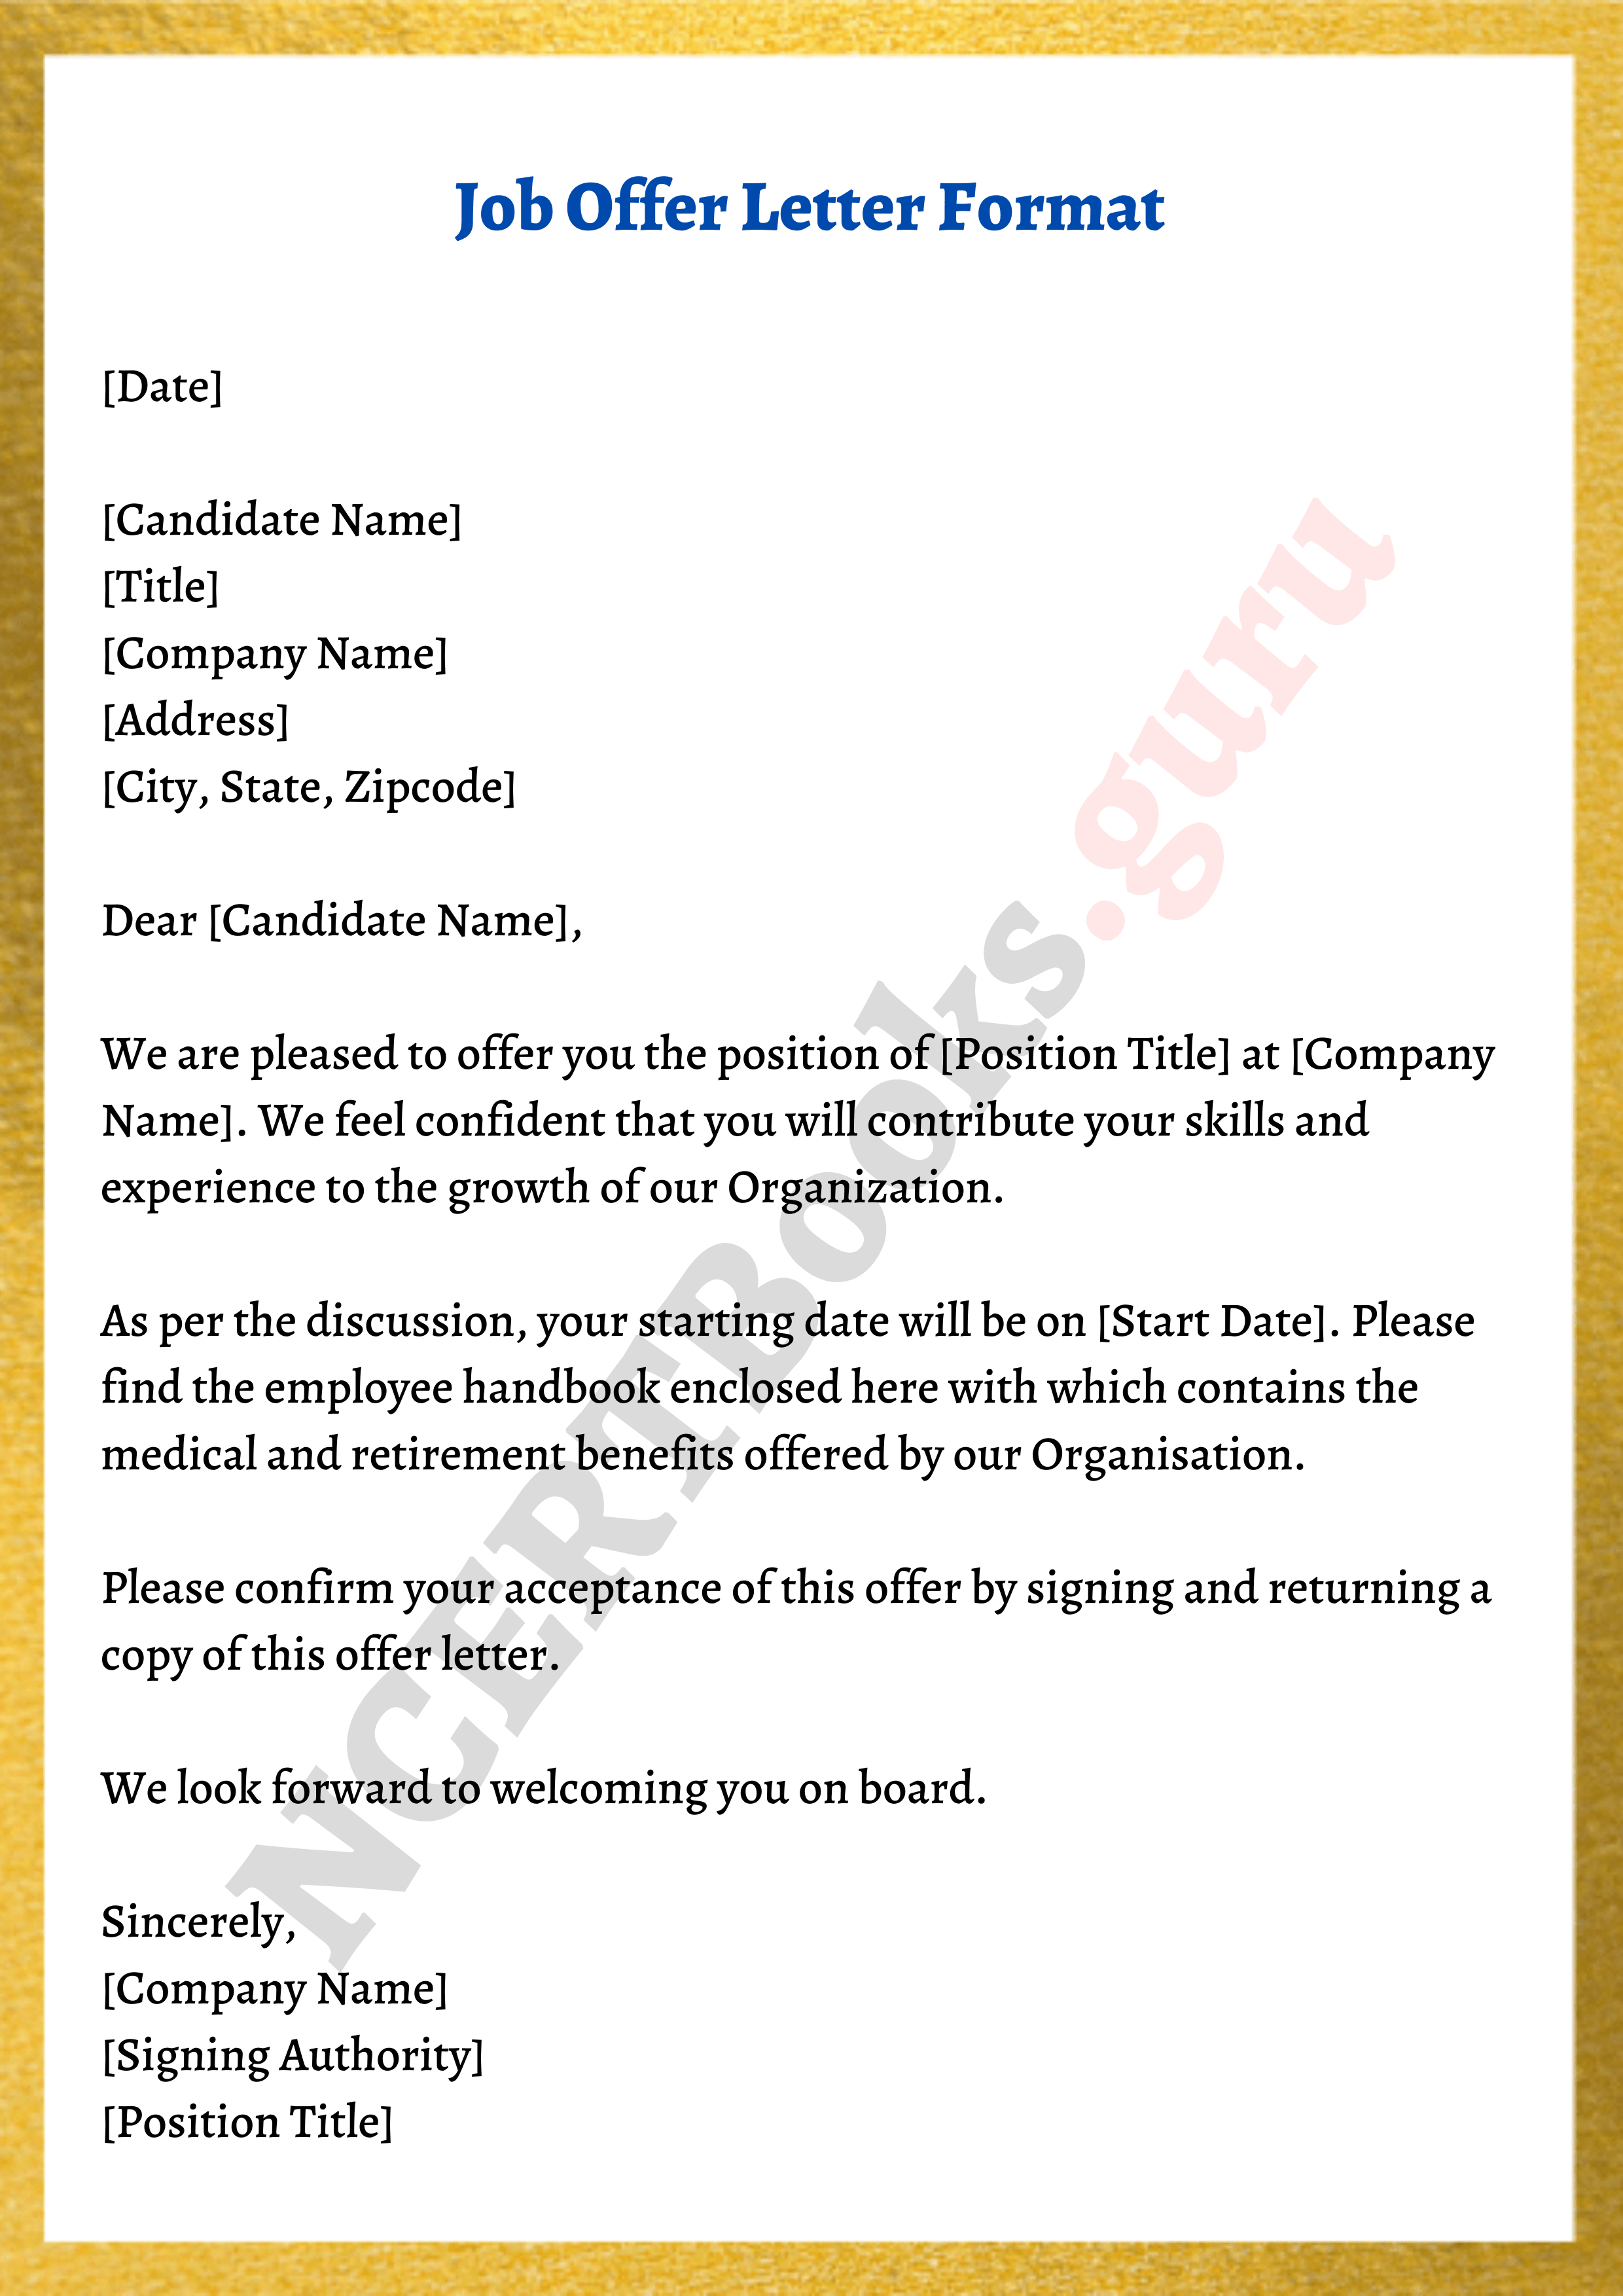 job offer letter assignment